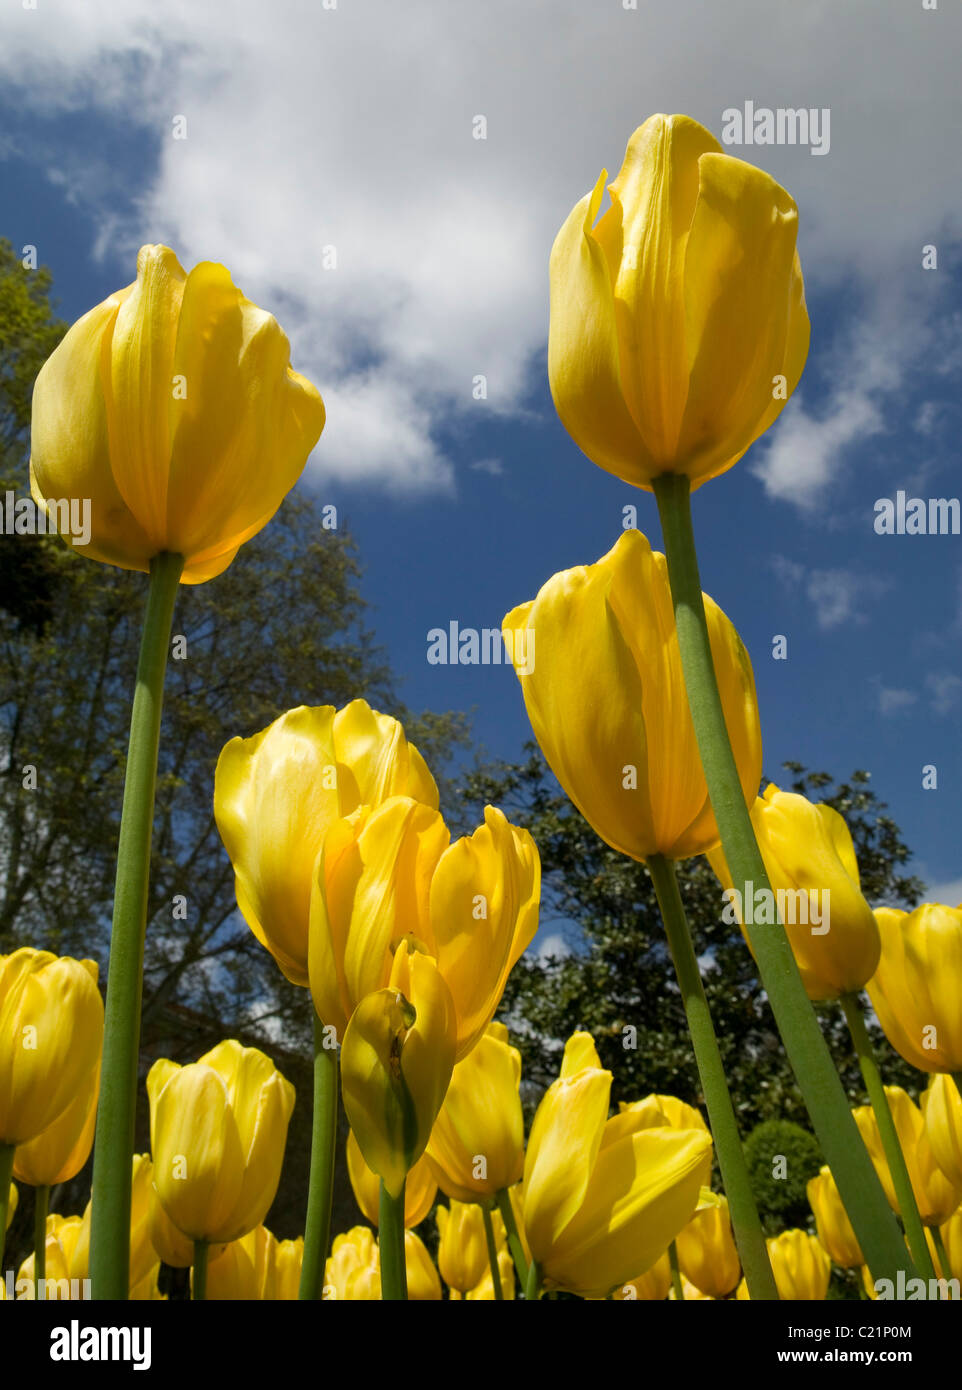 tulips yelow nature skip flowers growing spring plant petal tulipan tulipa Stock Photo